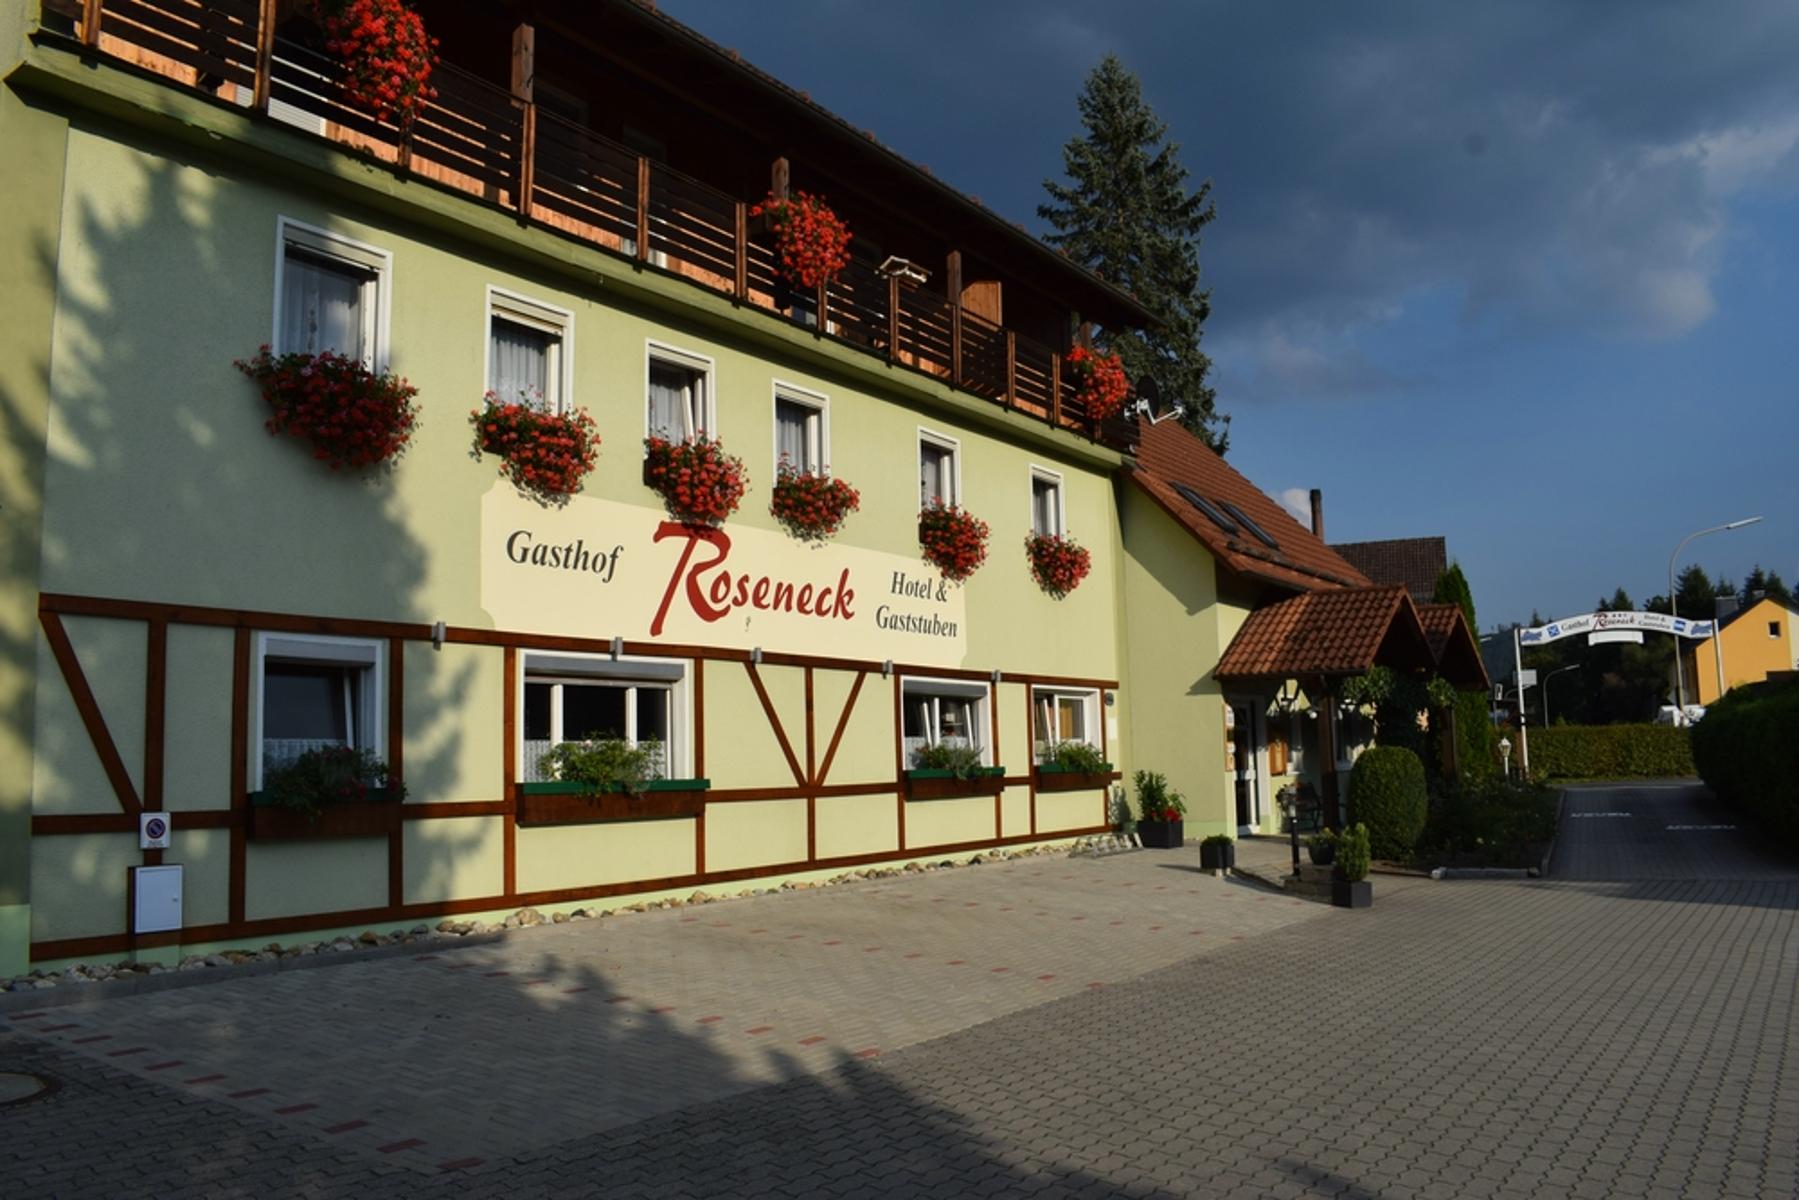 Erholen und entspannen Sie in  der ländlichen Idylle der Mittelgebirgsregion Frankenwald ganz im Norden von Bayern, abseits von Stress und Hektik. Das Hotel 